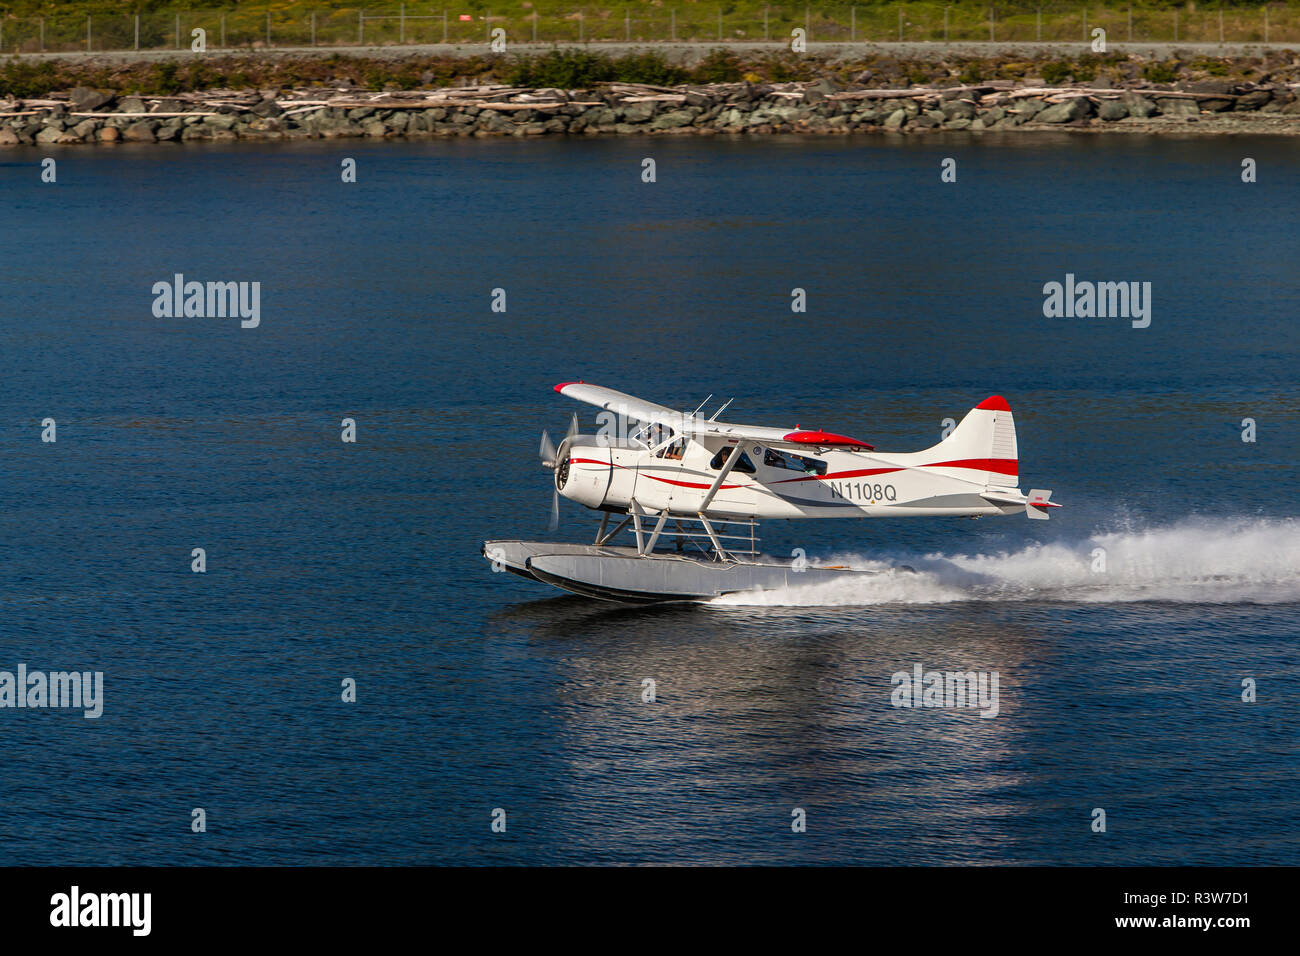 USA, Alaska, Ketchikan. Floatplane taxi to takeoff Stock Photo